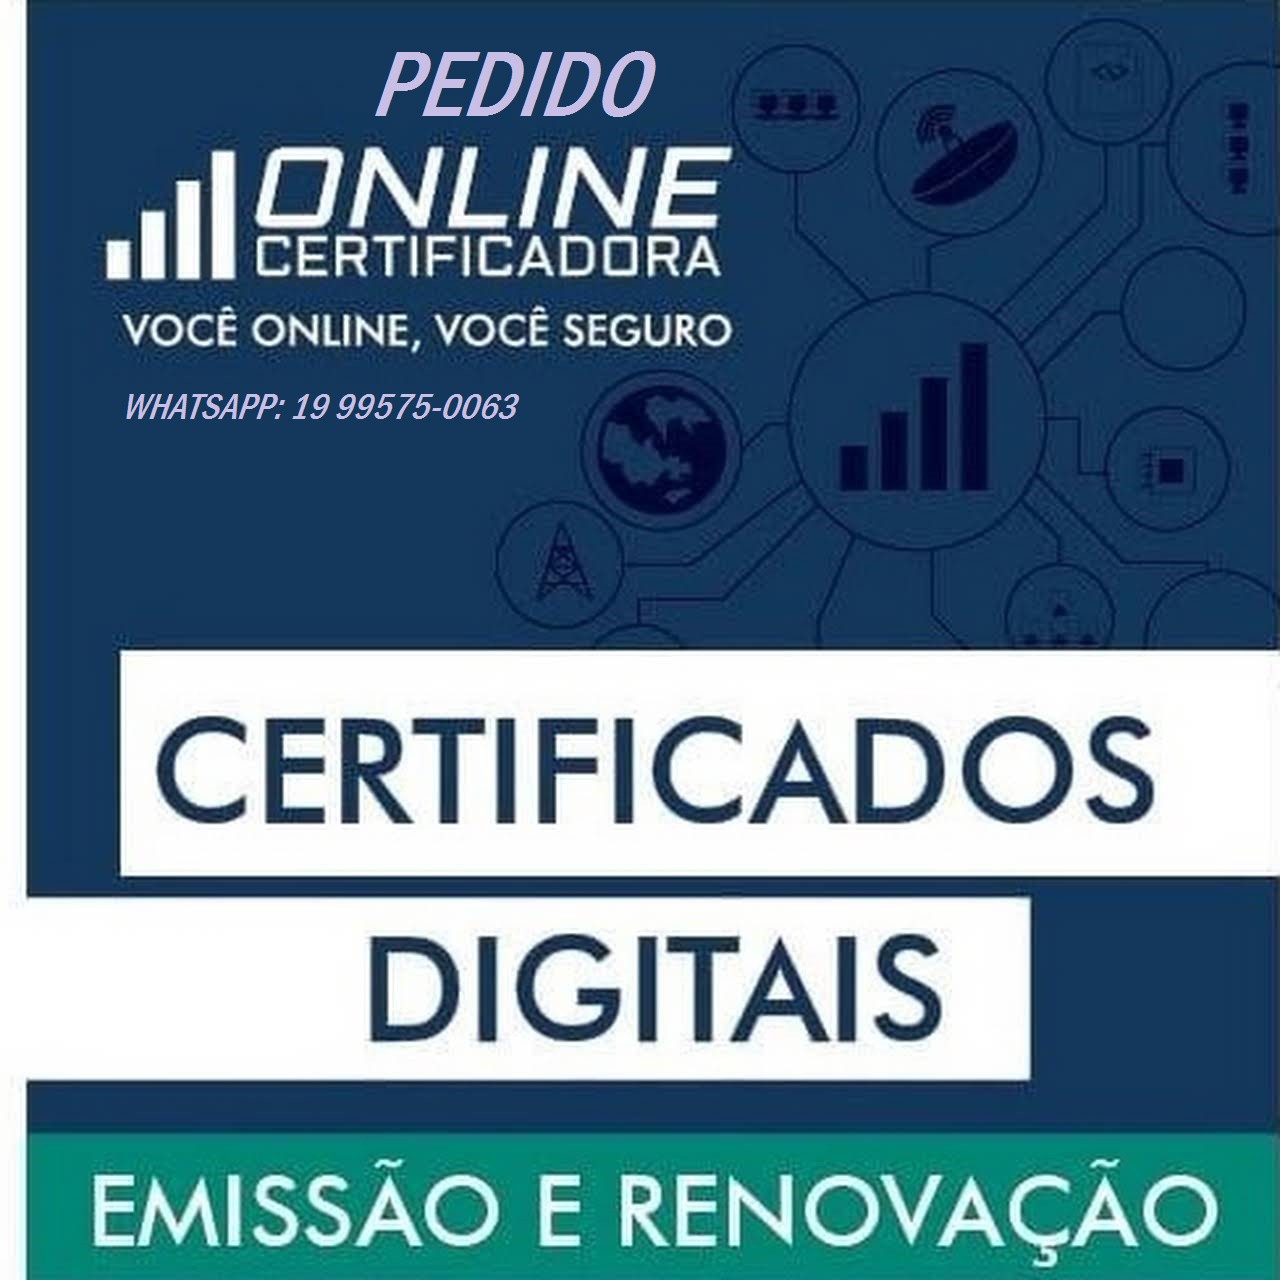 Certificado Digital e-CNPJ e e-CPF - Carimbos Campinas